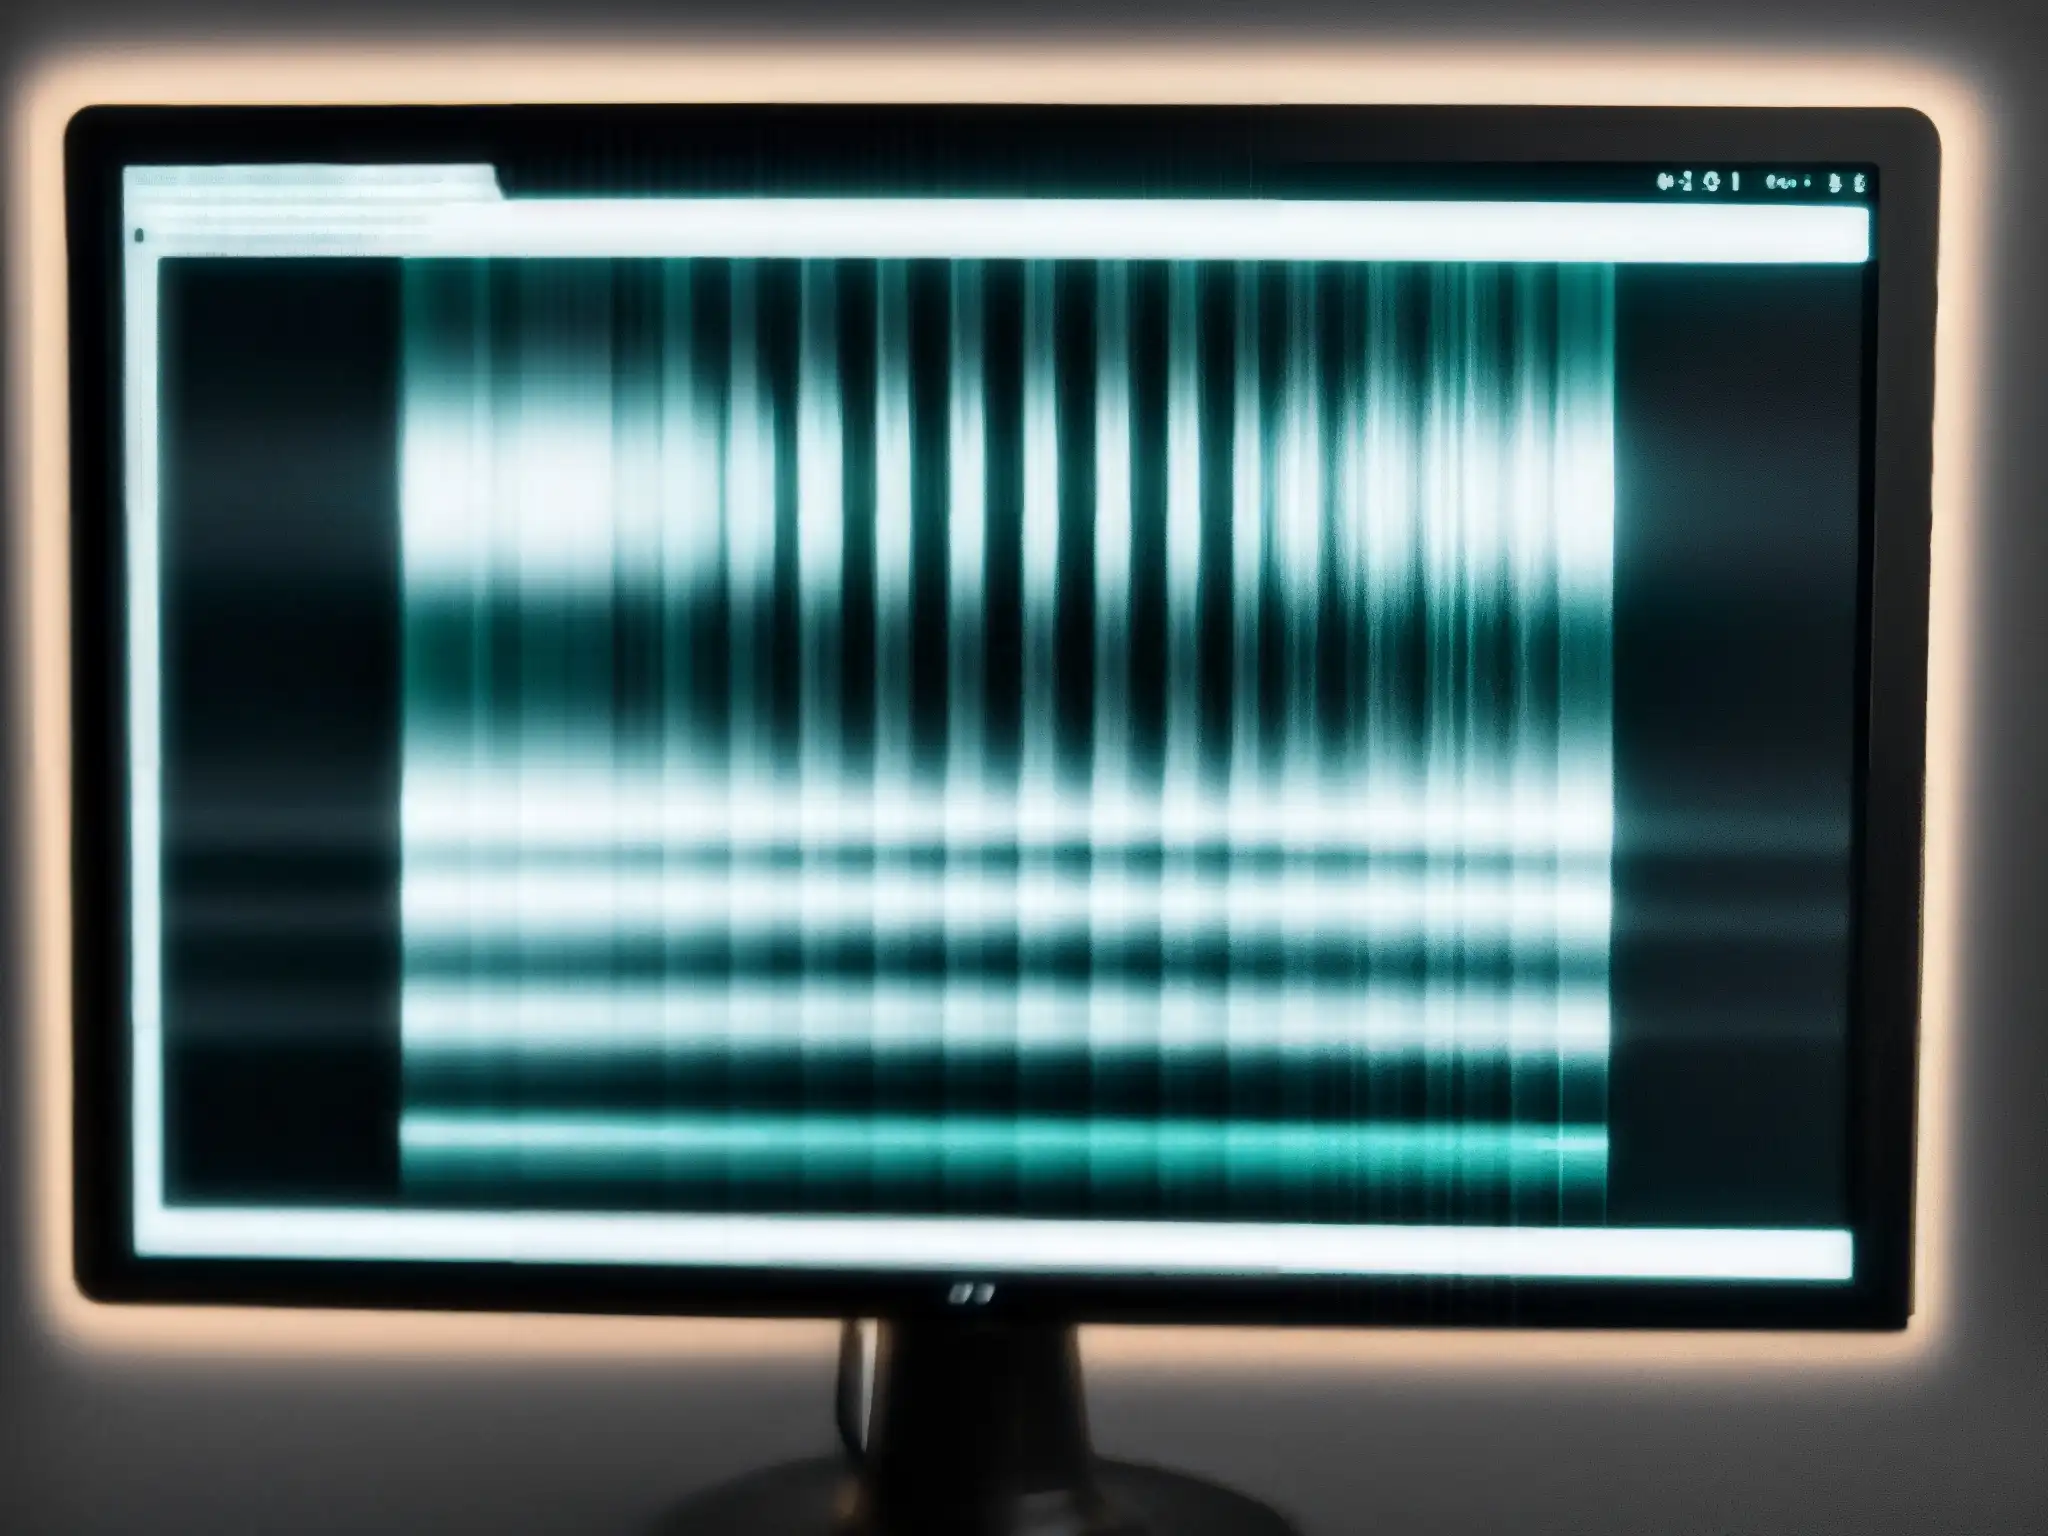 Imagen en escala de grises de un monitor con un NFT glitched, evocando un fenómeno NFTs malditos colección digital